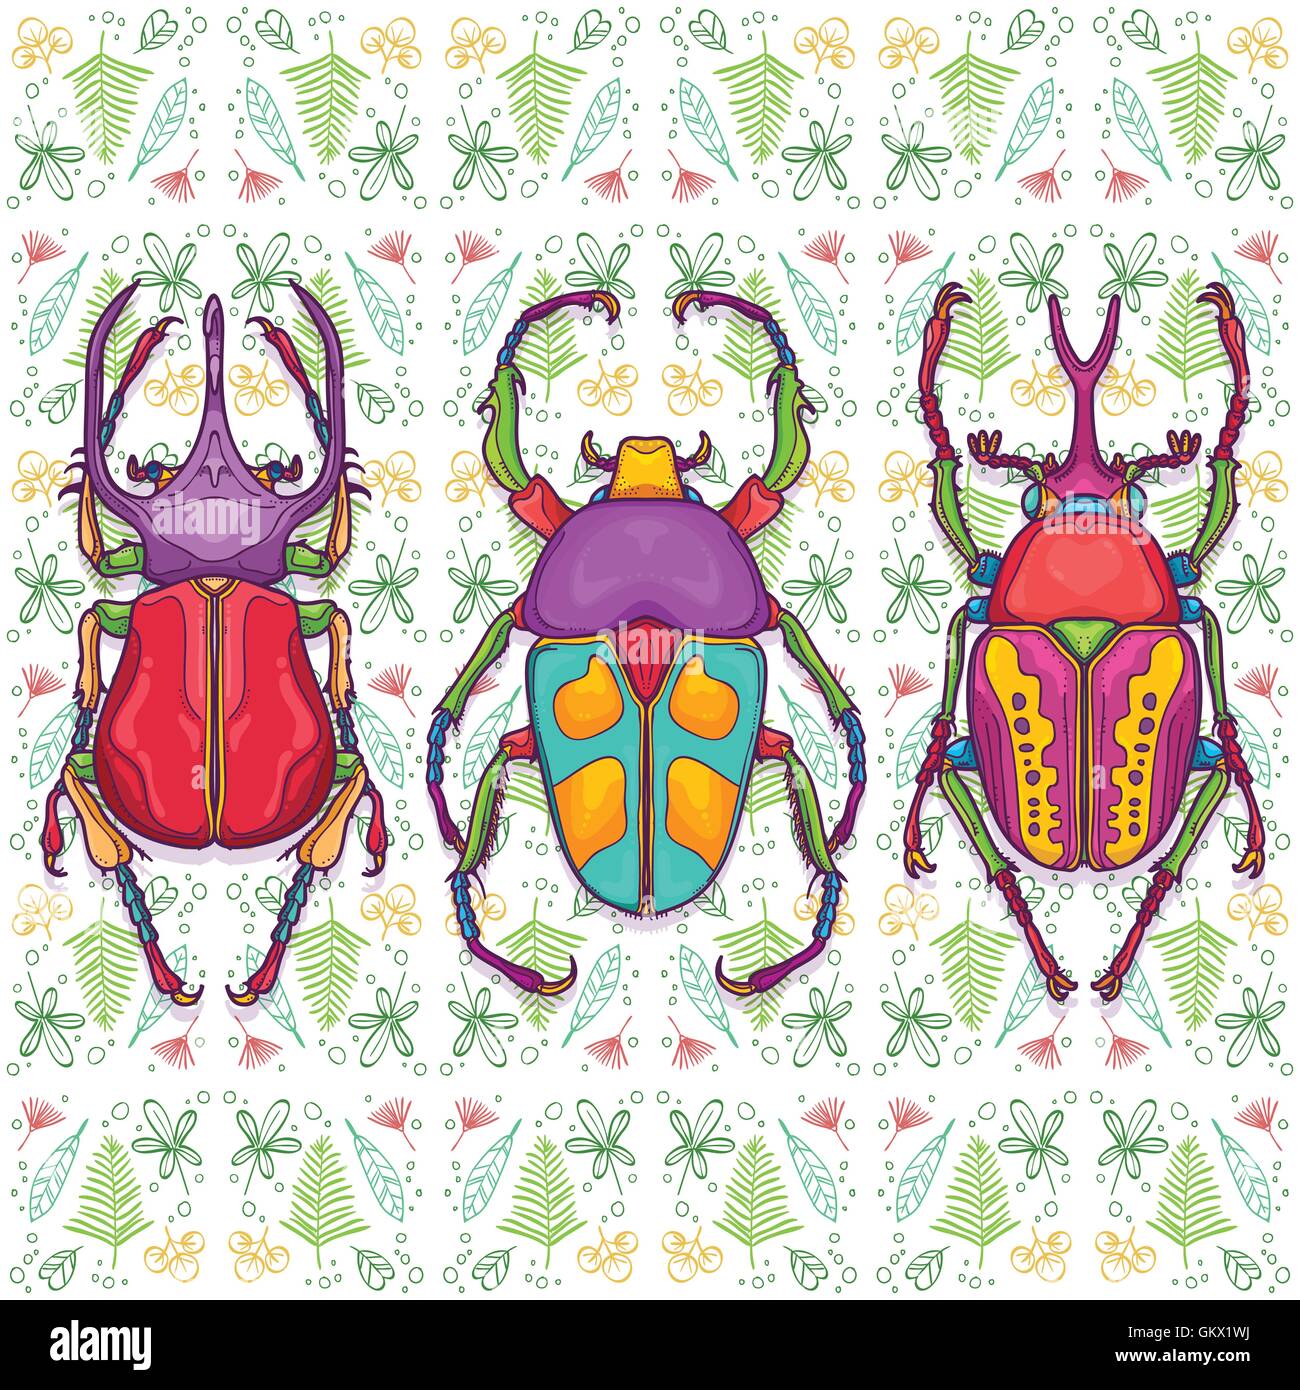 Vektor-Illustration von Insekten bunte Hand gezeichnet. Satz von 3 Beetle Bugs Draufsicht auf endlose Blatt Hintergrund Stock Vektor